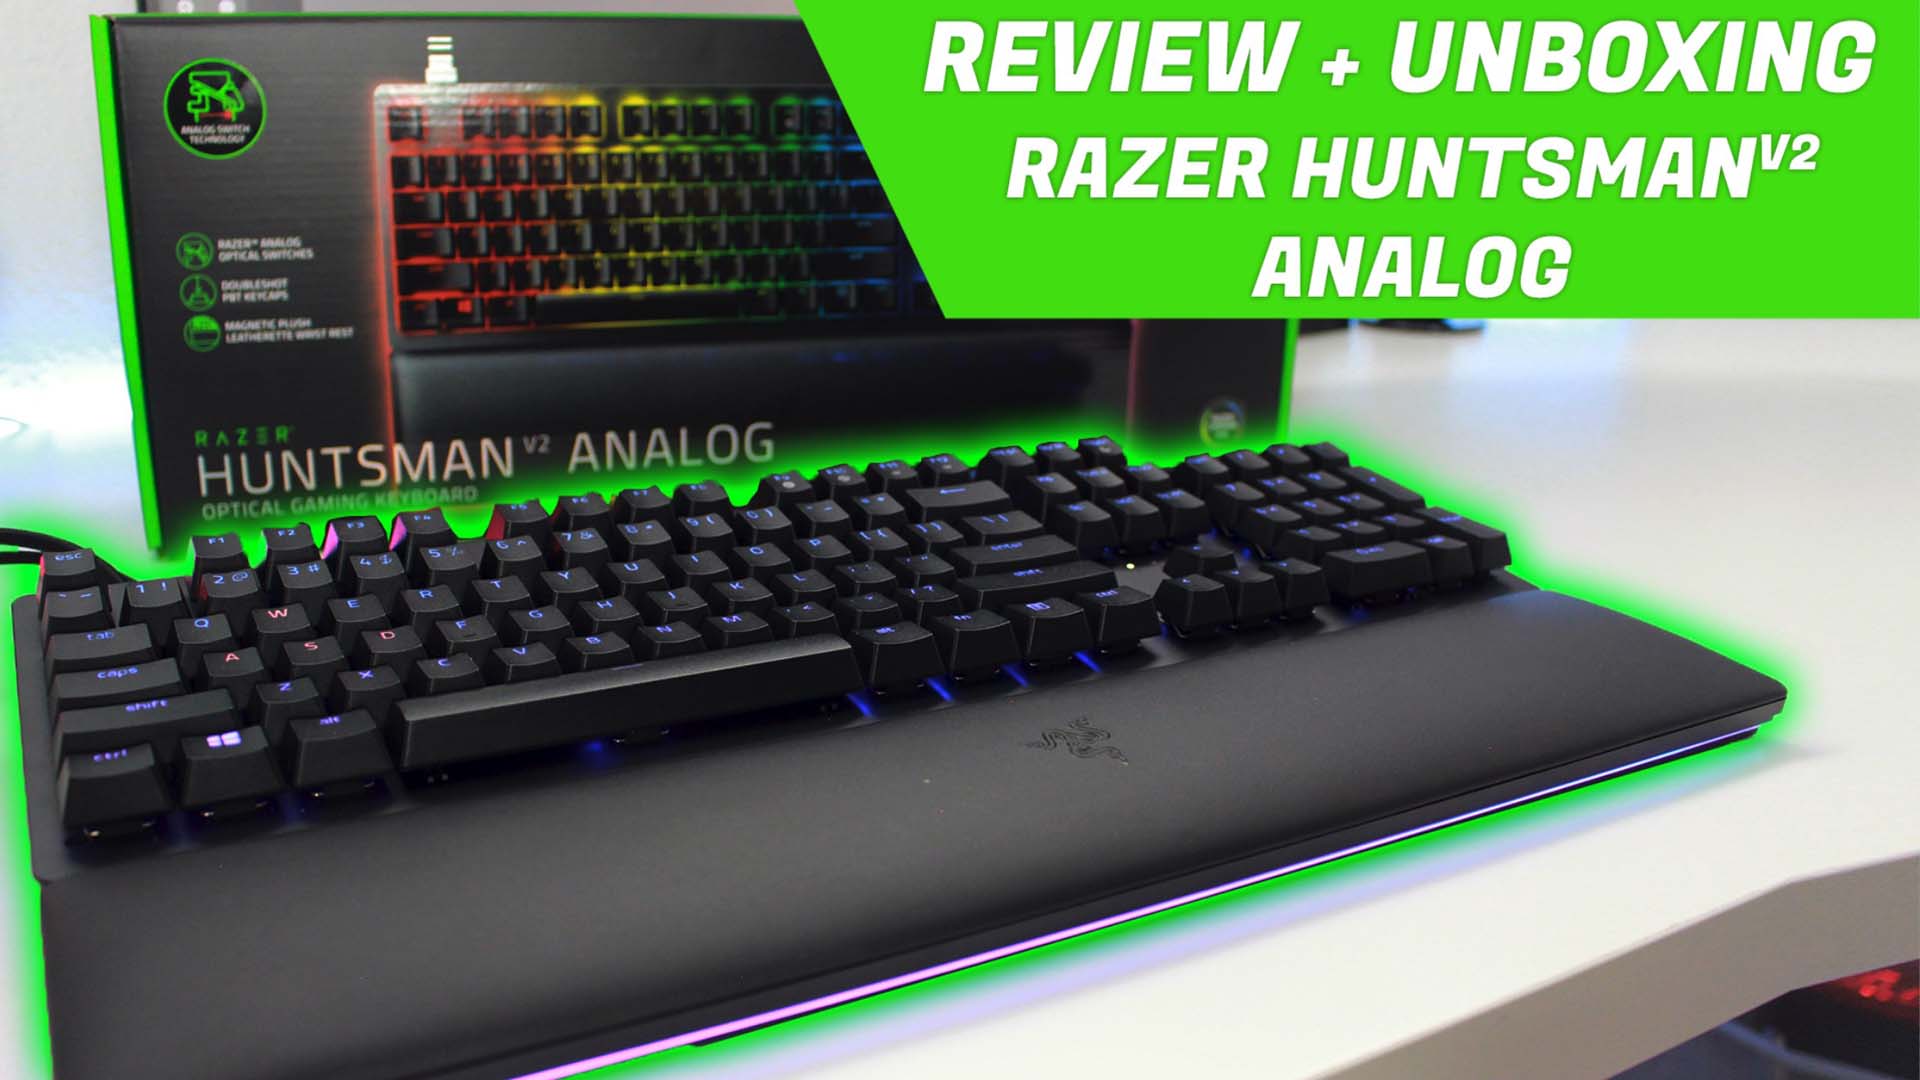 Razer Huntsman V2 Analog: review del teclado MÁS PERSONALIZABLE de Razer  con switches ópticos analógicos